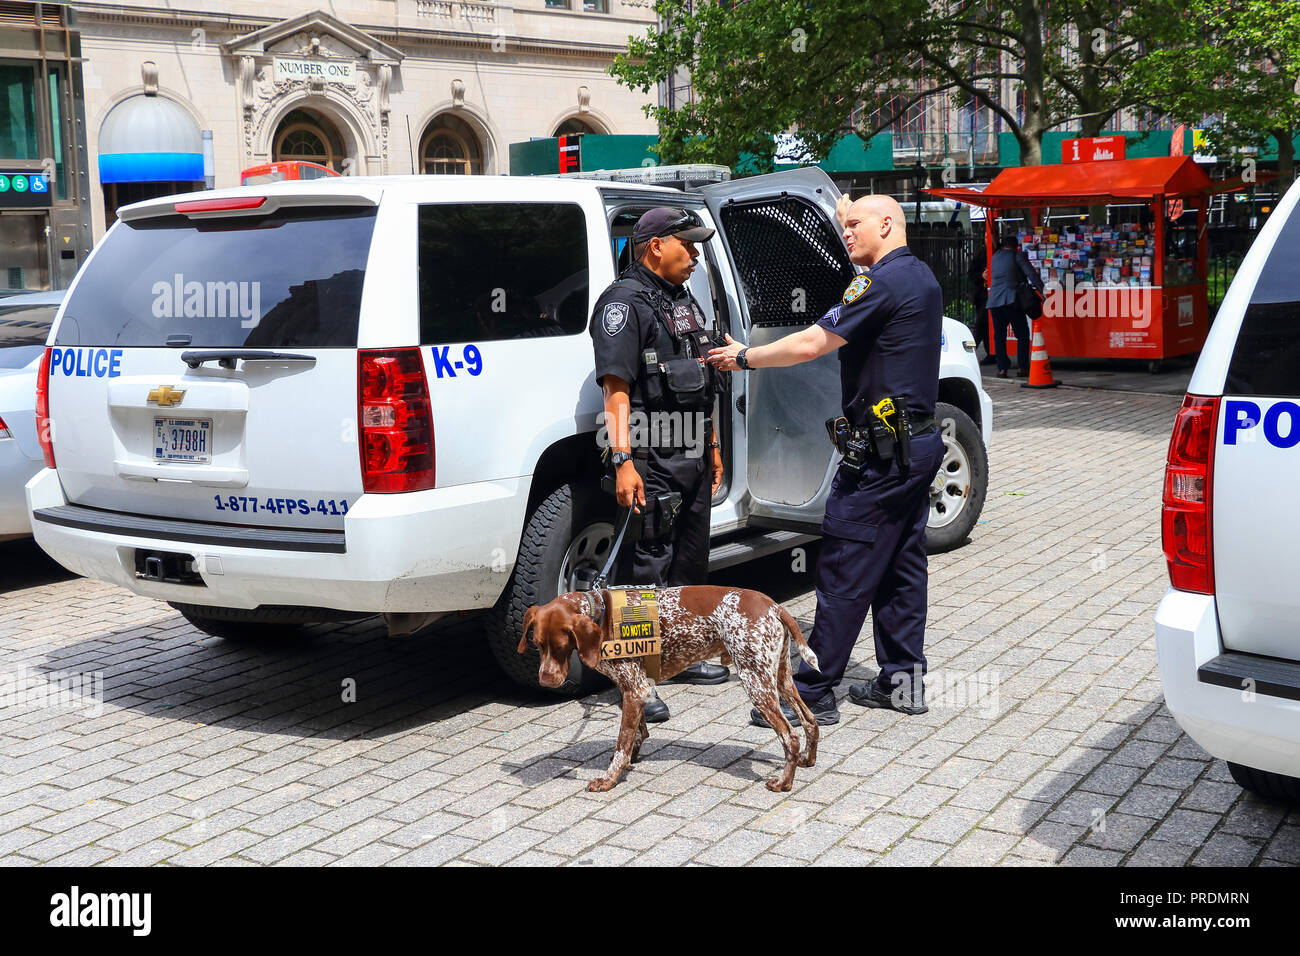 La Ciudad de Nueva York, Estados Unidos - 8 de junio de 2017: la policía de Nueva York K-9 unidad proporcionando seguridad en Manhattan Foto de stock